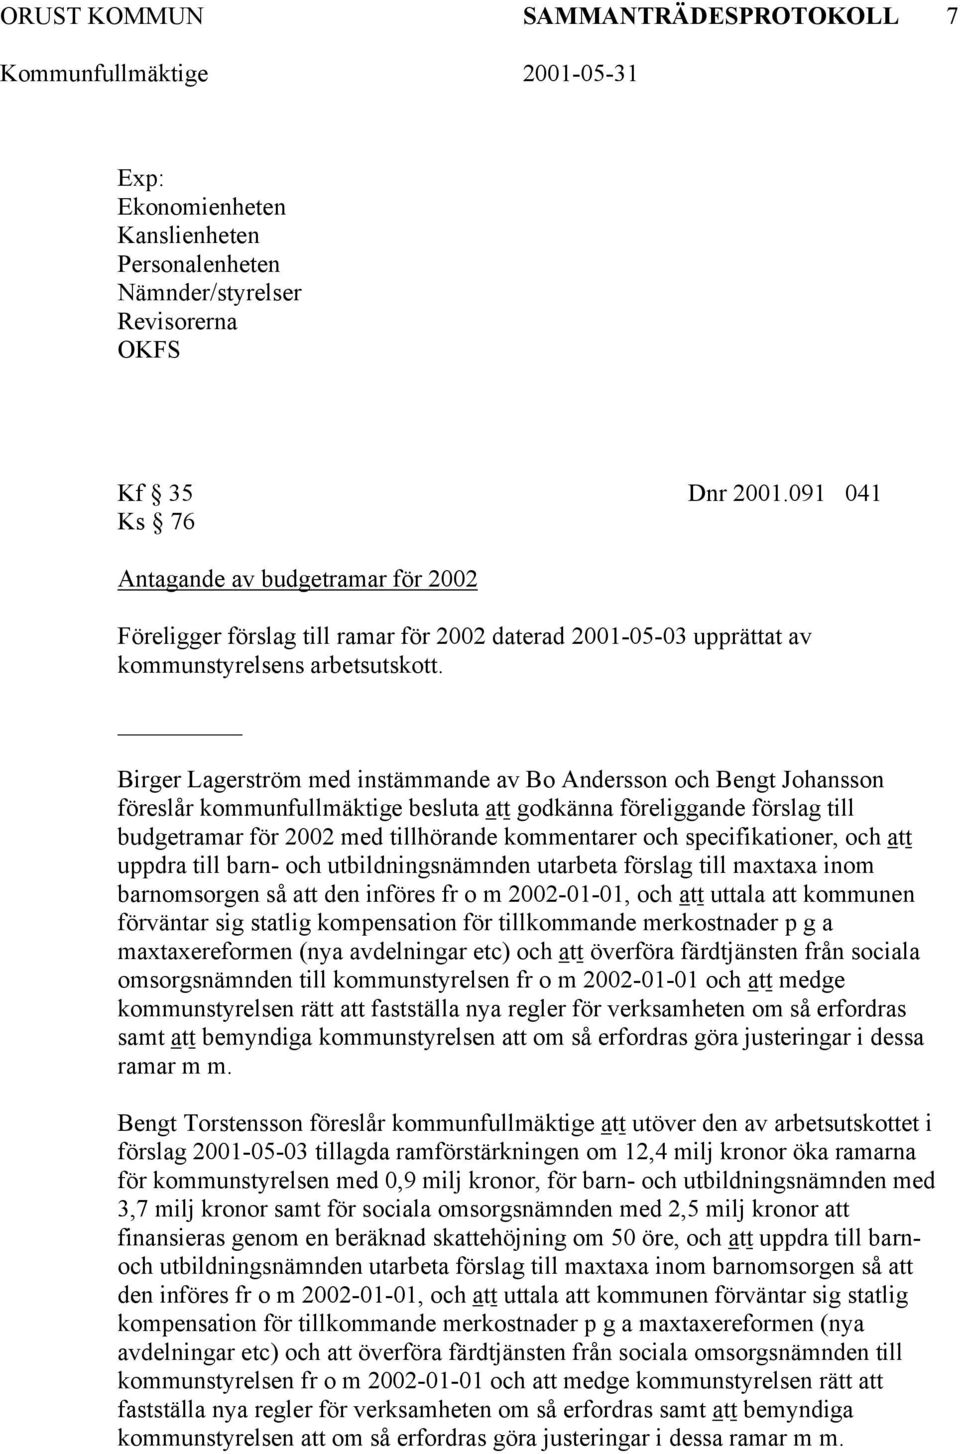 Birger Lagerström med instämmande av Bo Andersson och Bengt Johansson föreslår kommunfullmäktige besluta att godkänna föreliggande förslag till budgetramar för 2002 med tillhörande kommentarer och